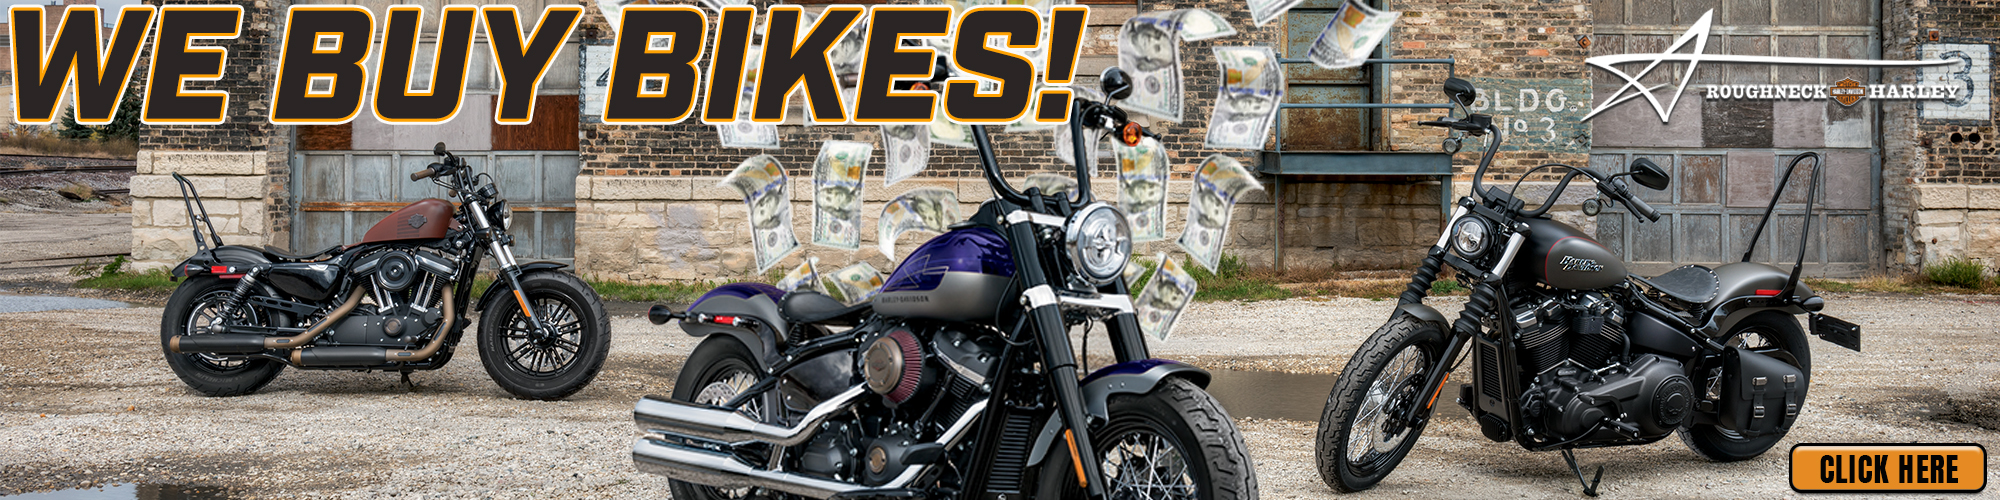 Roughneck Harley Davidson®: Official Harley-Davidson® dealer